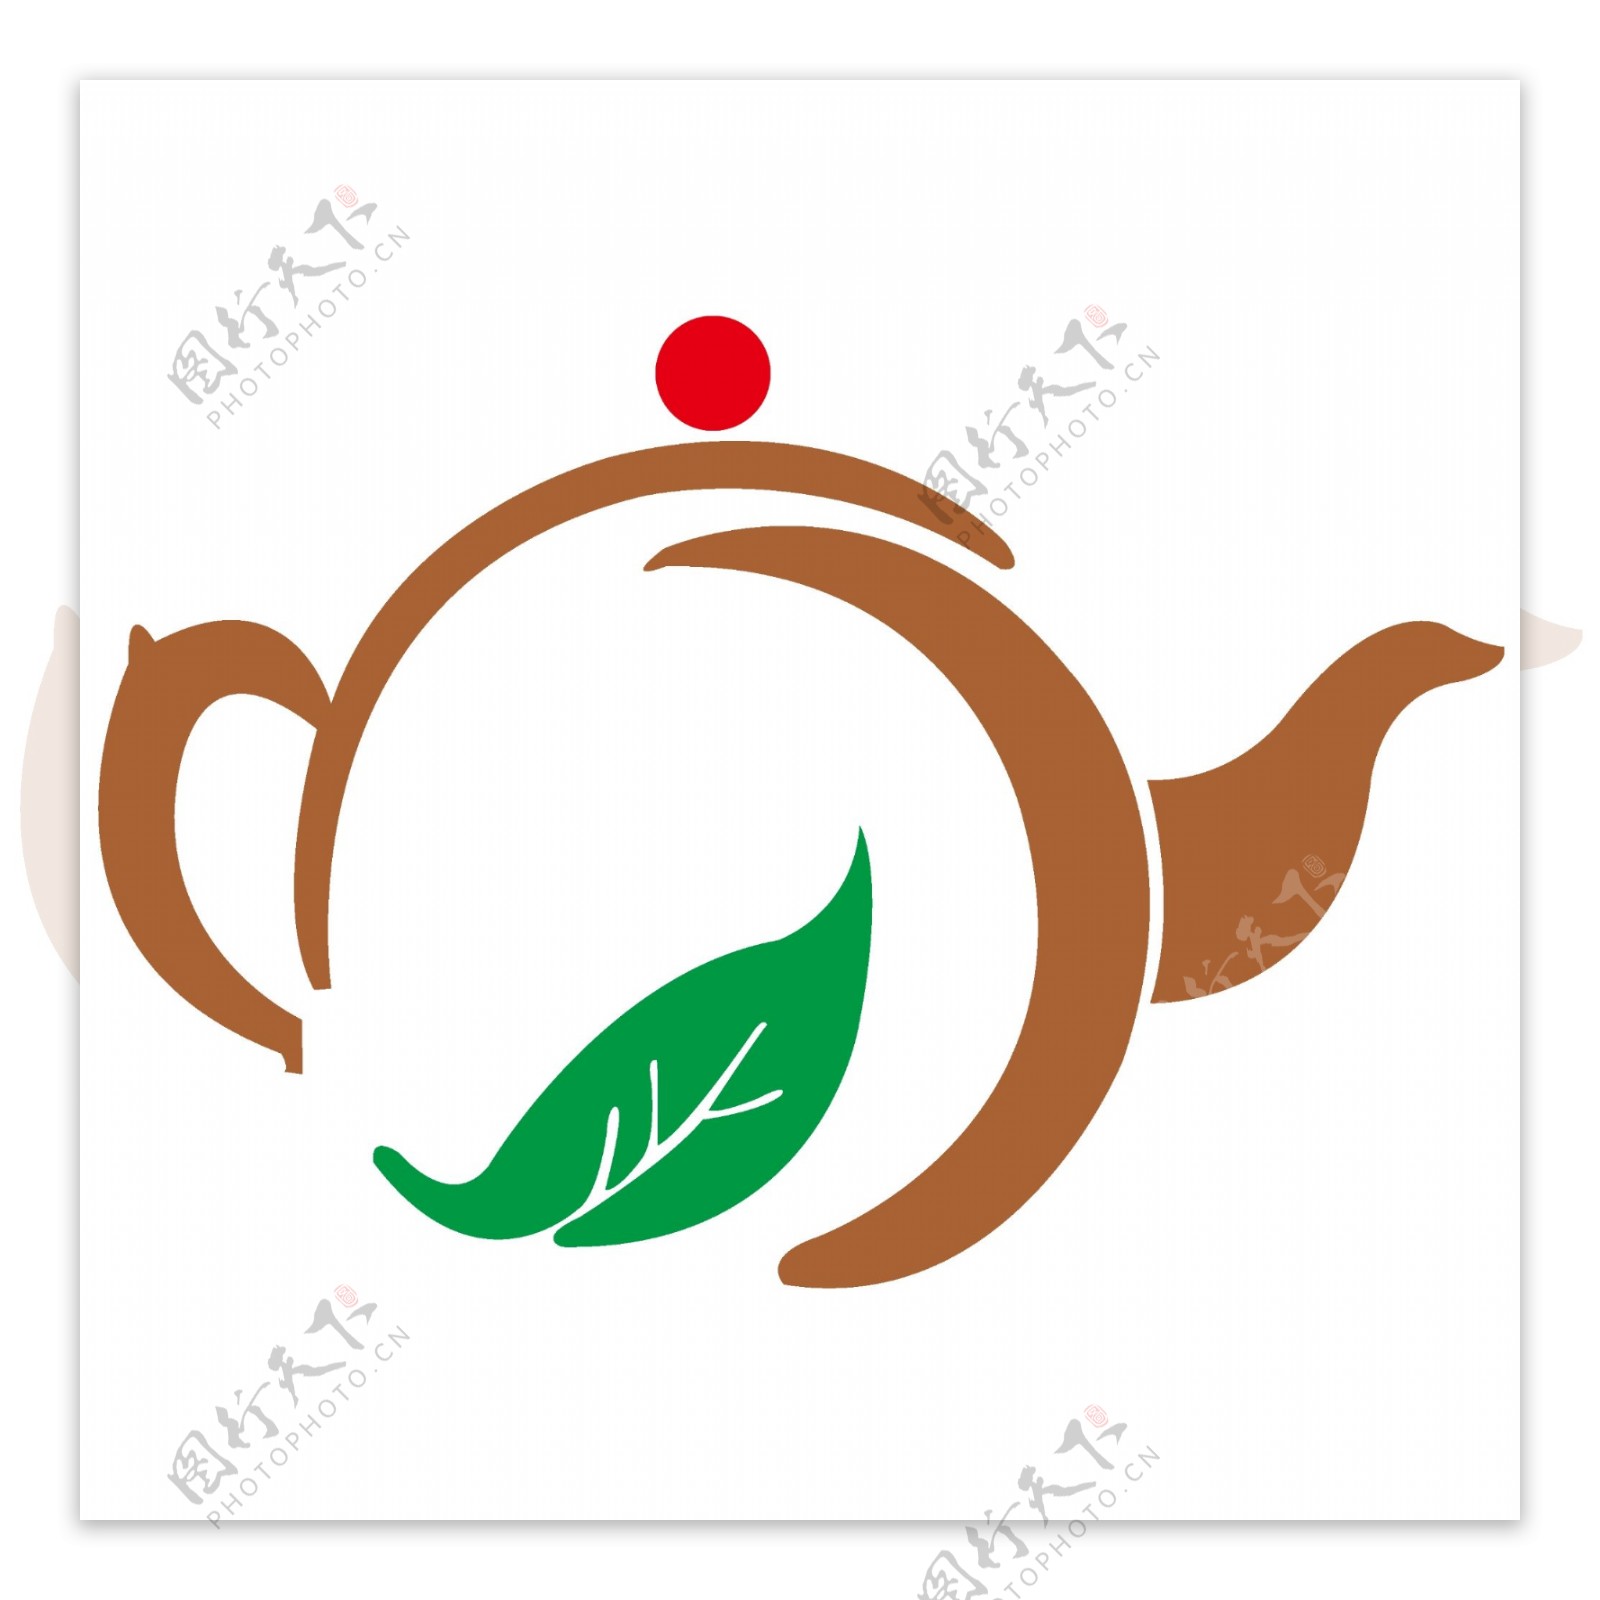 创意标志茶壶智能图像LOGO